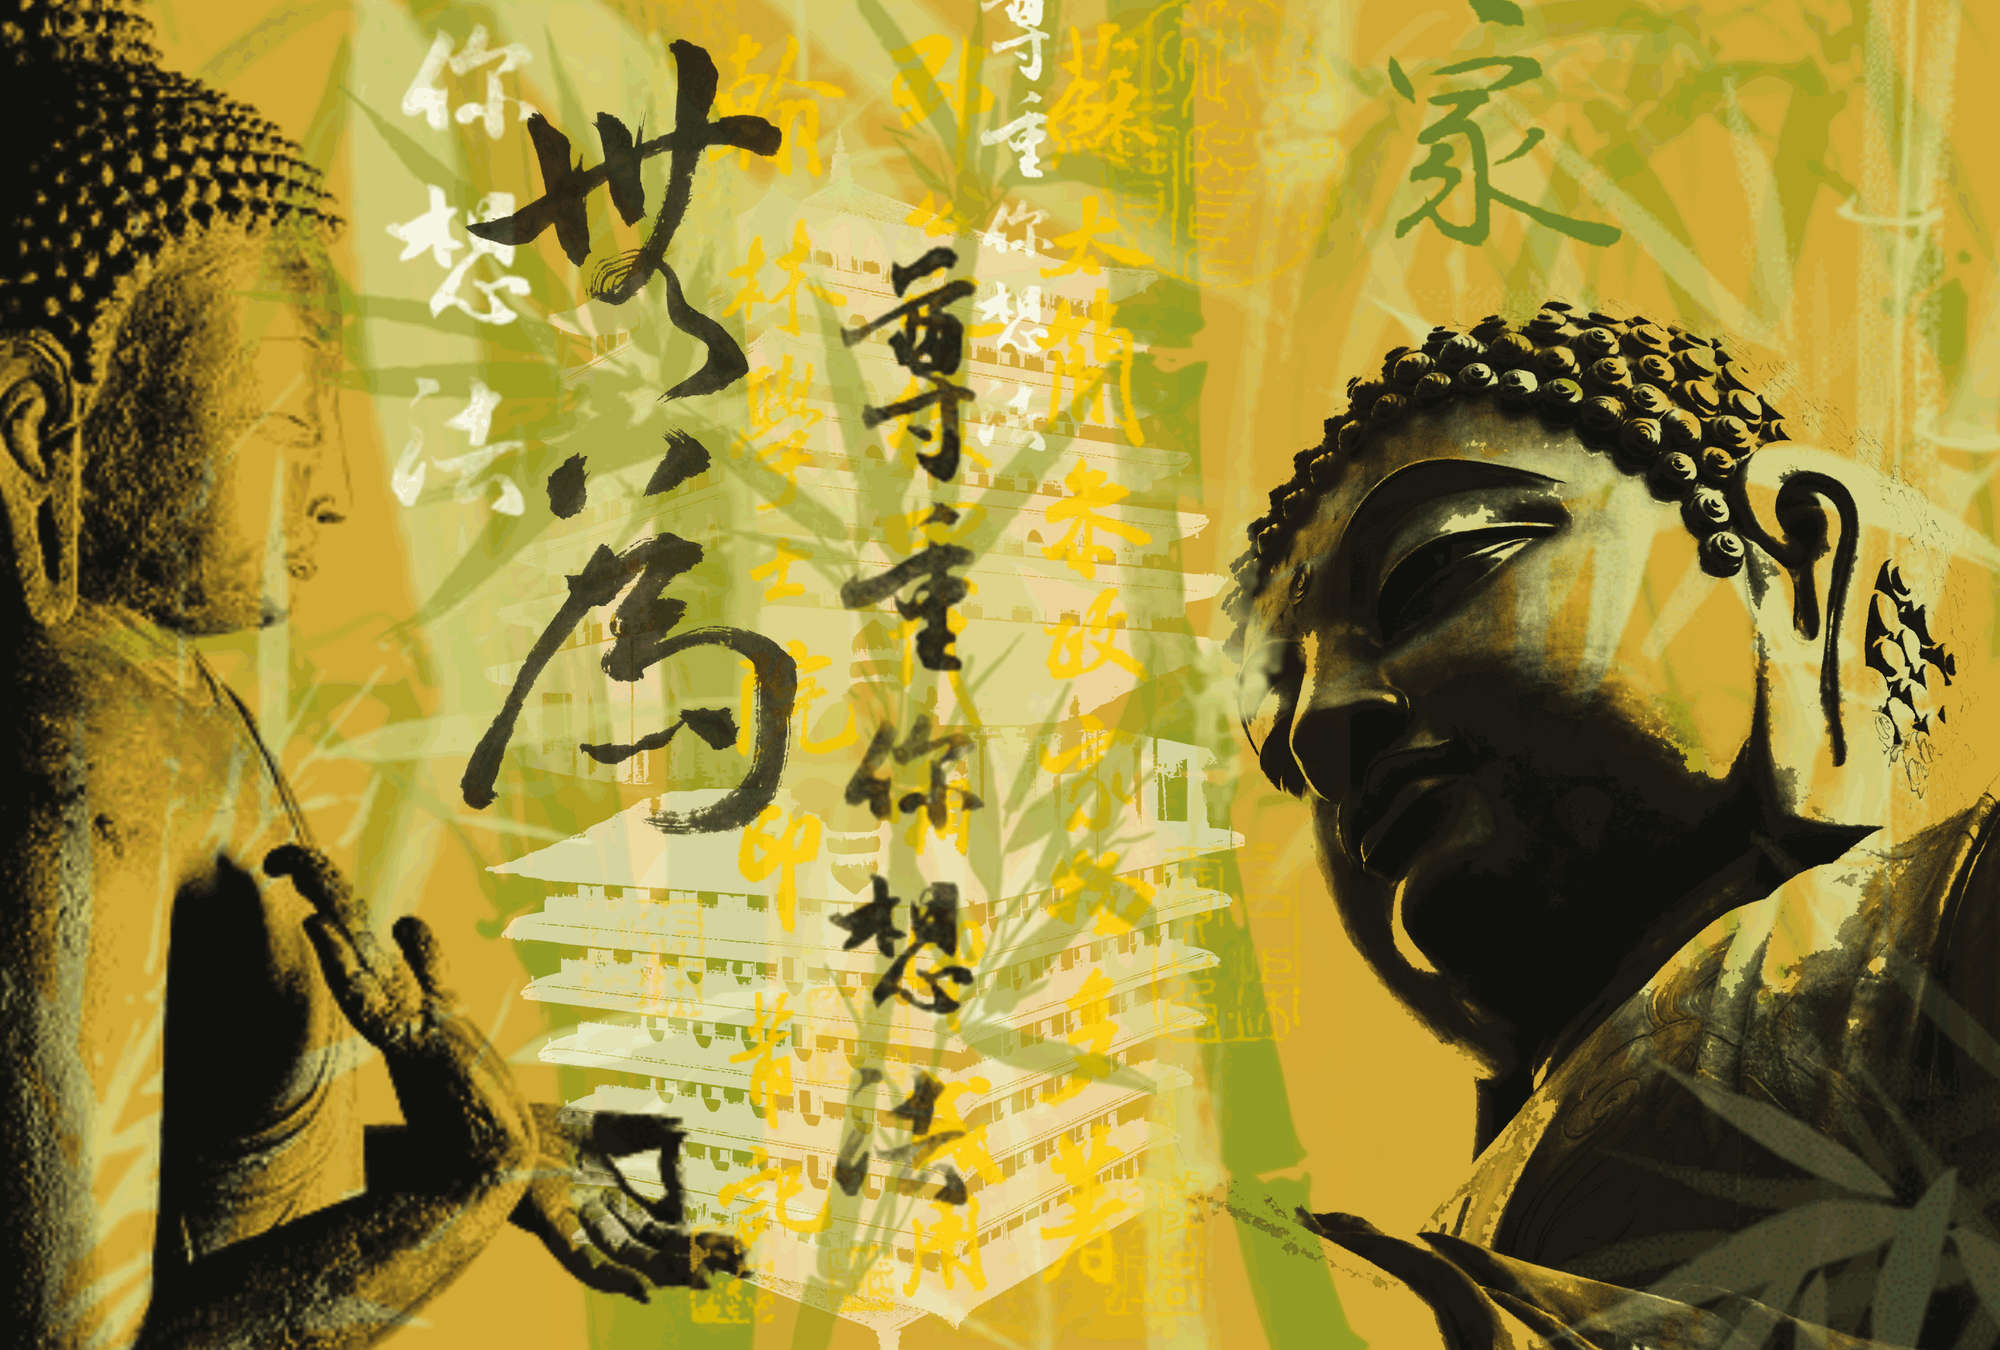             Mural de Buda estilo fusión asiática
        